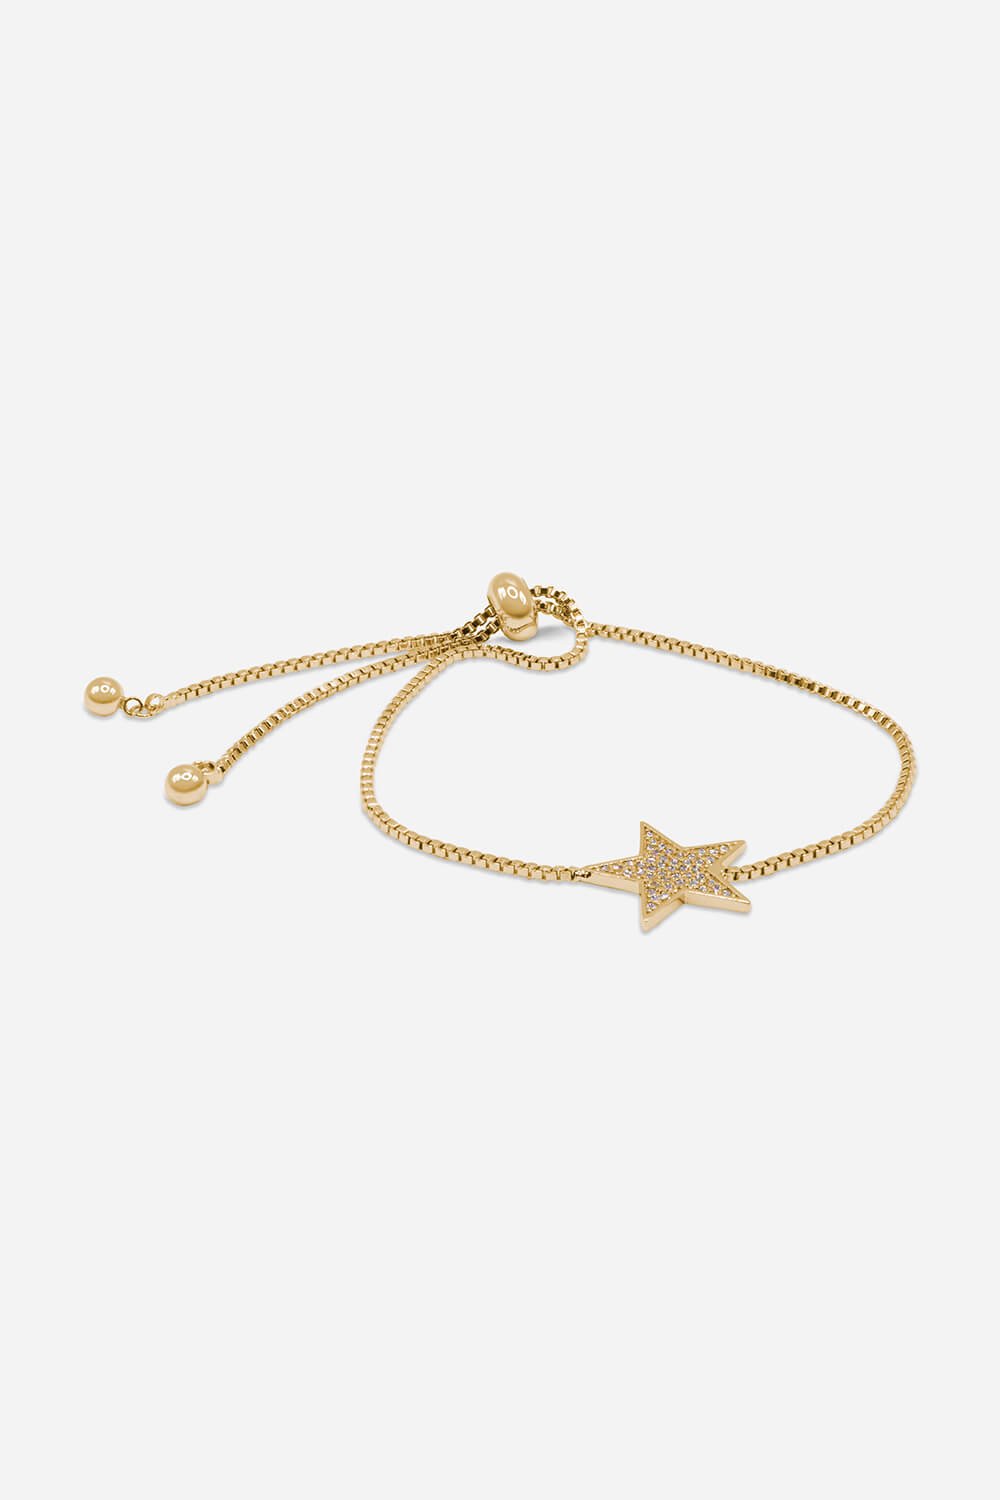 Gold Adjustable Star Friendship Bracelet, Image 2 of 2